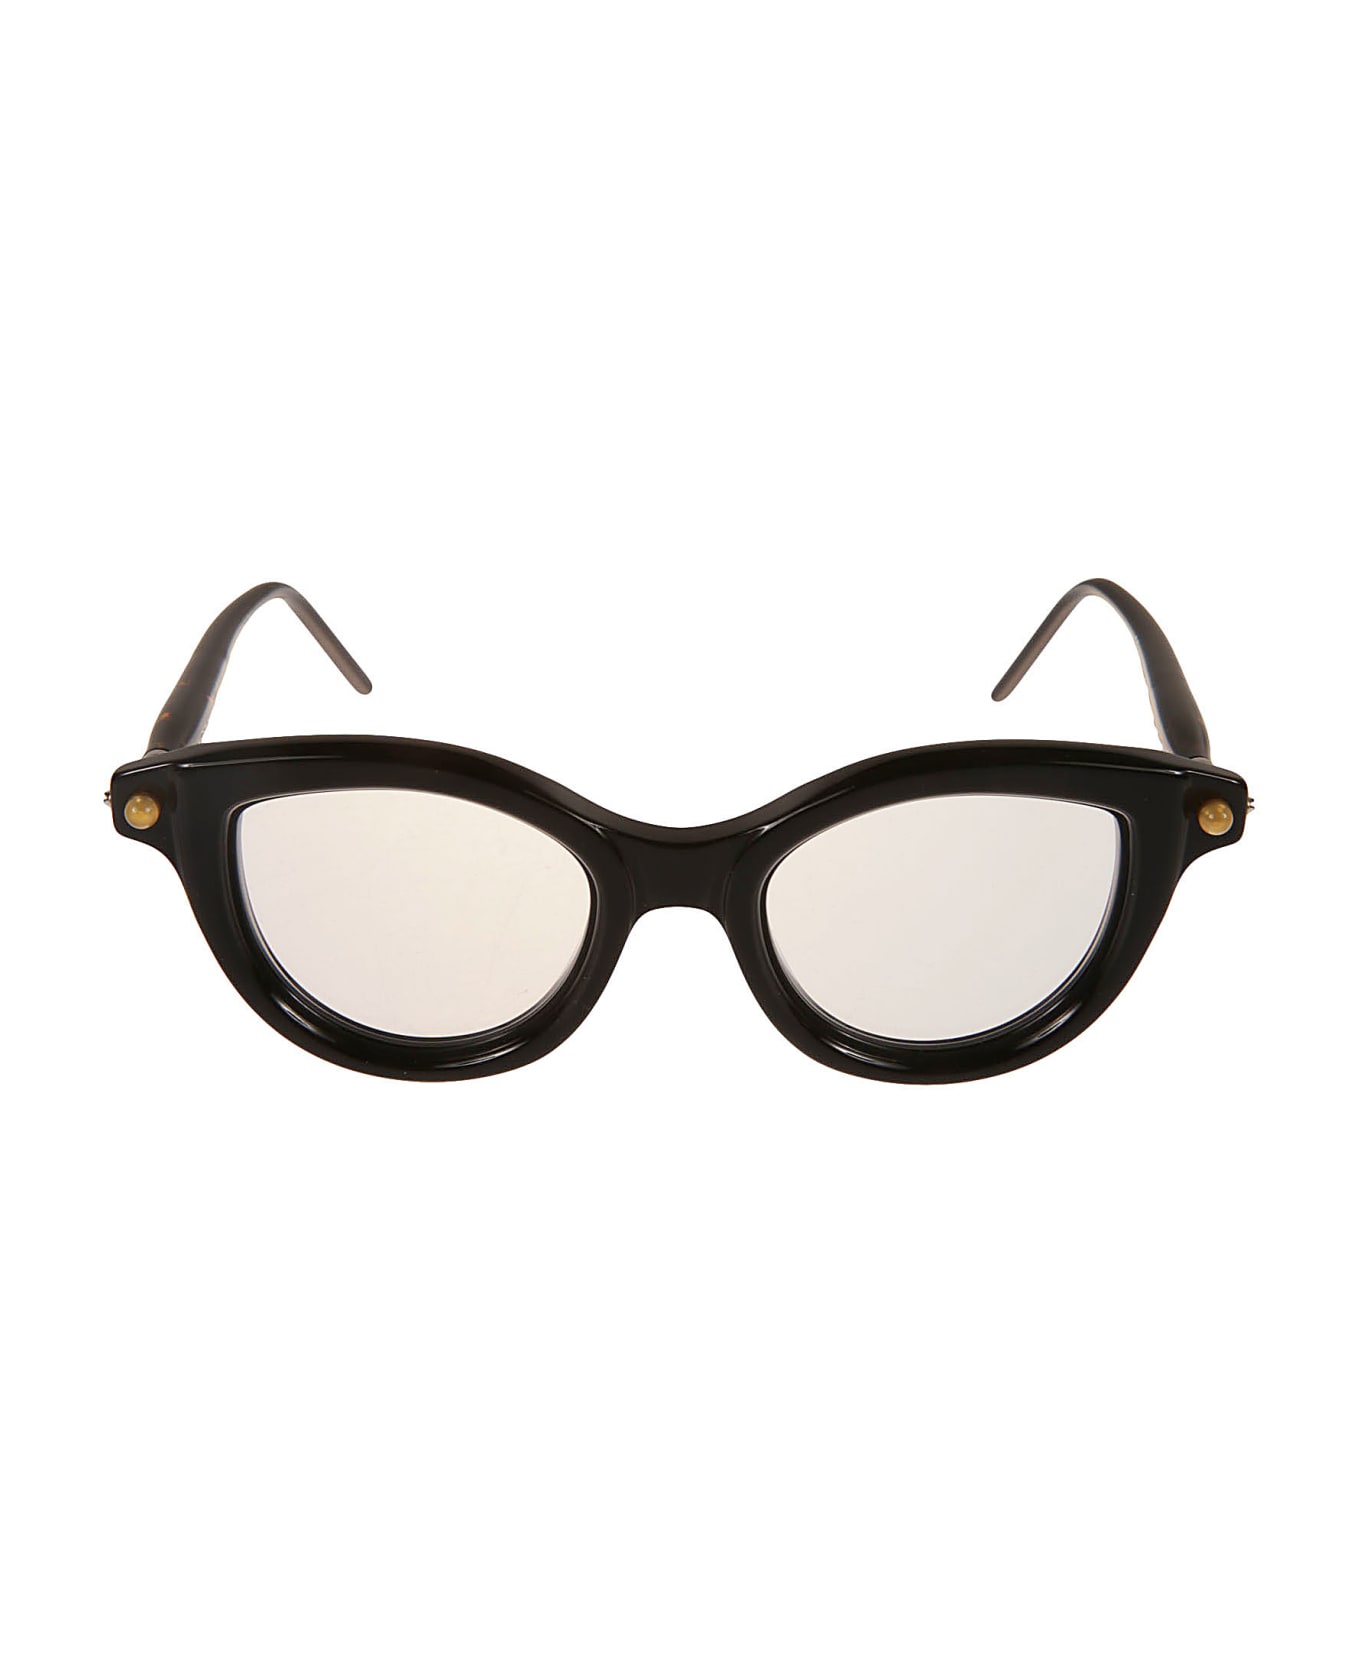 Kuboraum P7 Glasses - Black アイウェア